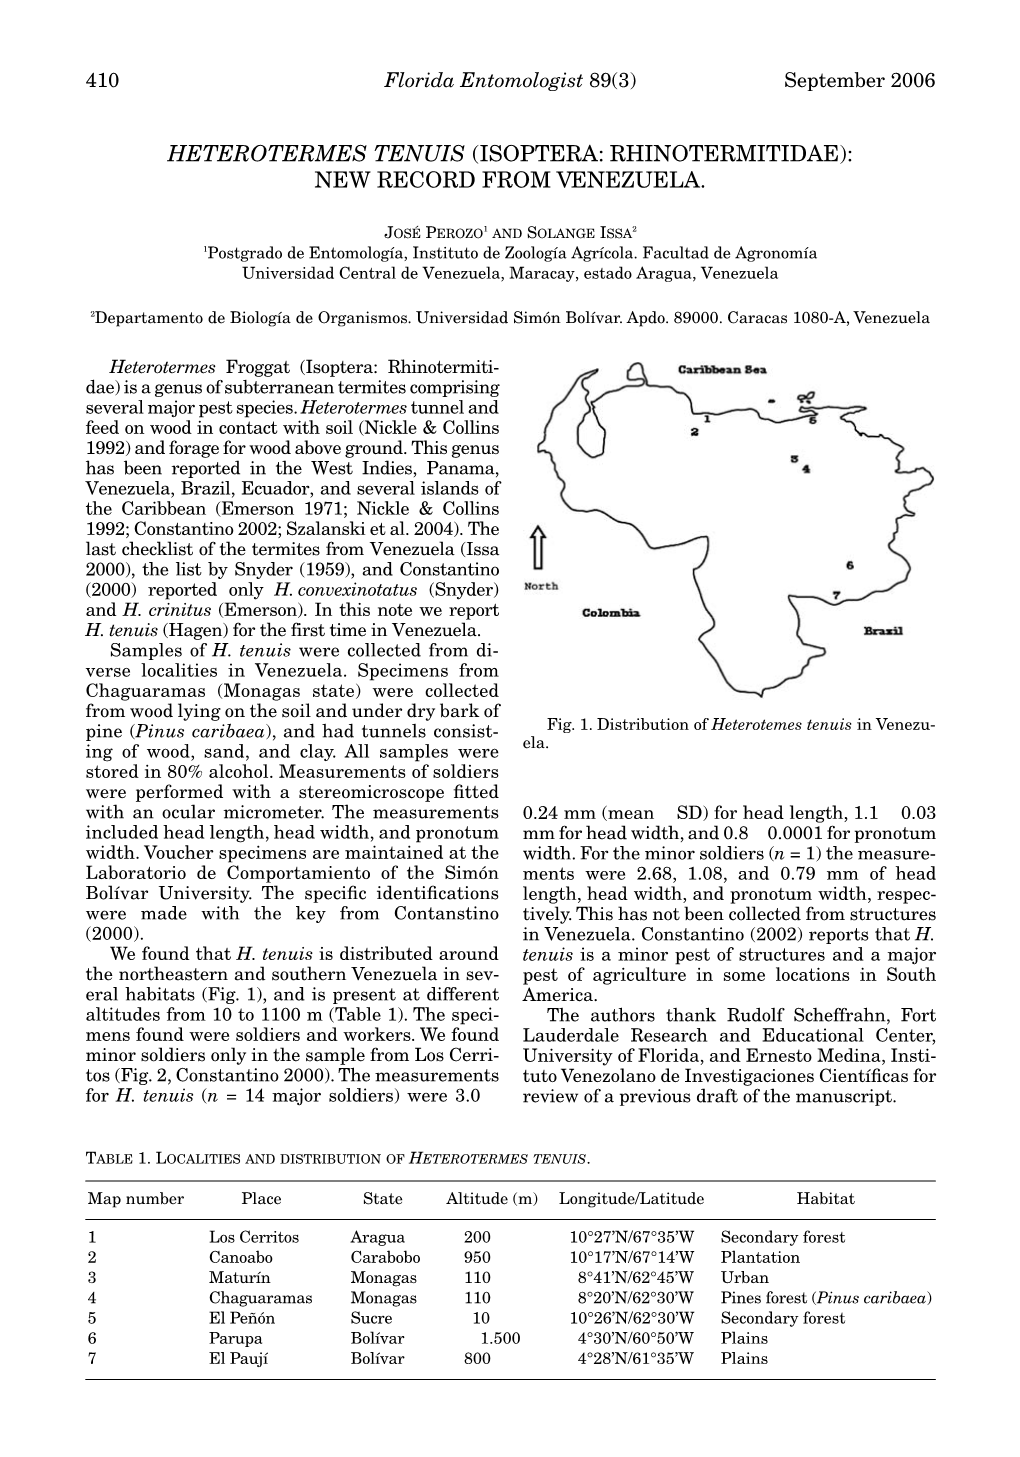 Heterotermes Tenuis (Isoptera: Rhinotermitidae): New Record from Venezuela